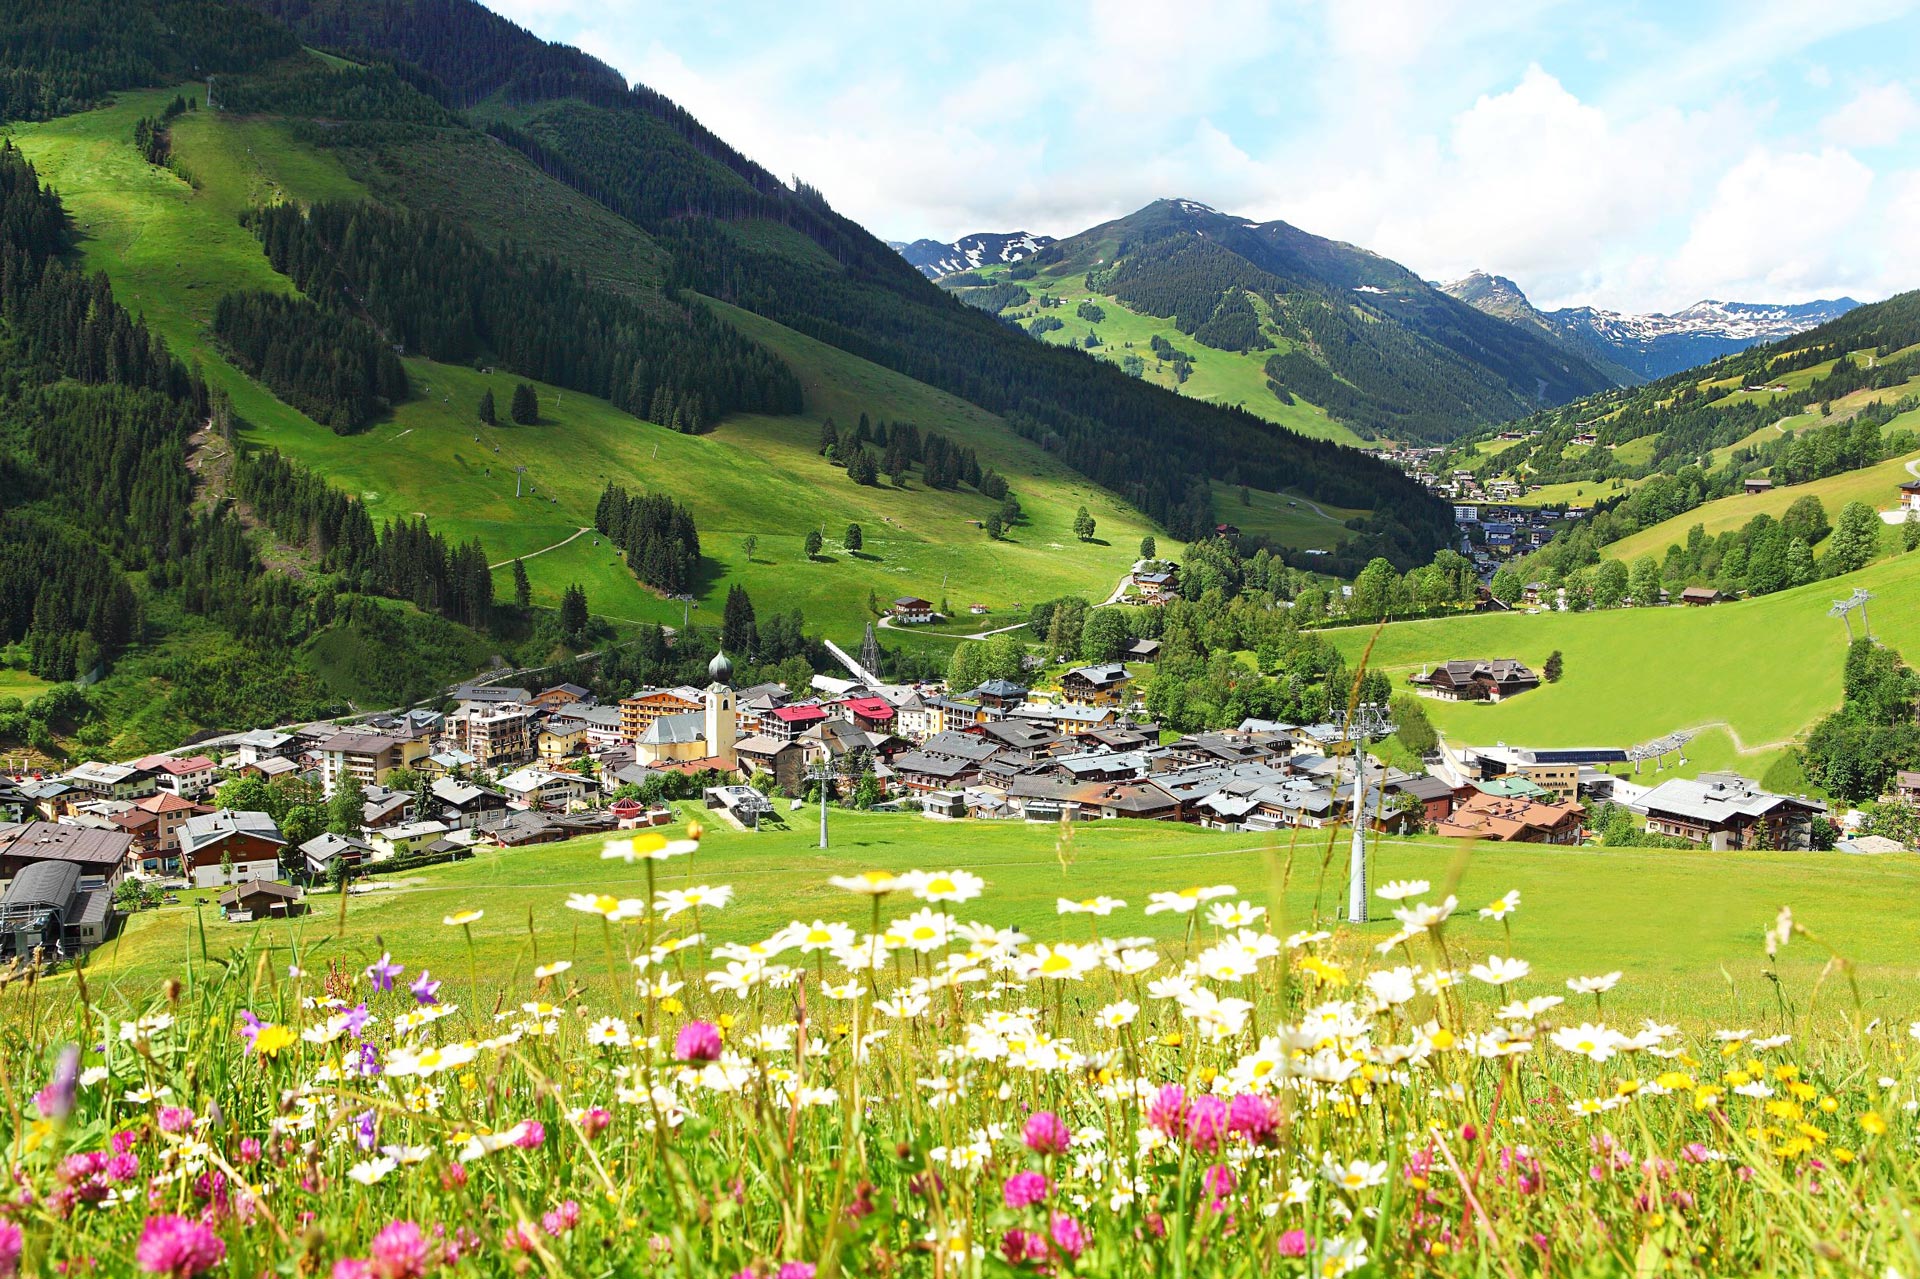 Ein Ausblick auf den Ort Saalbach mit einer bunten Blumenwiese im Vordergrund